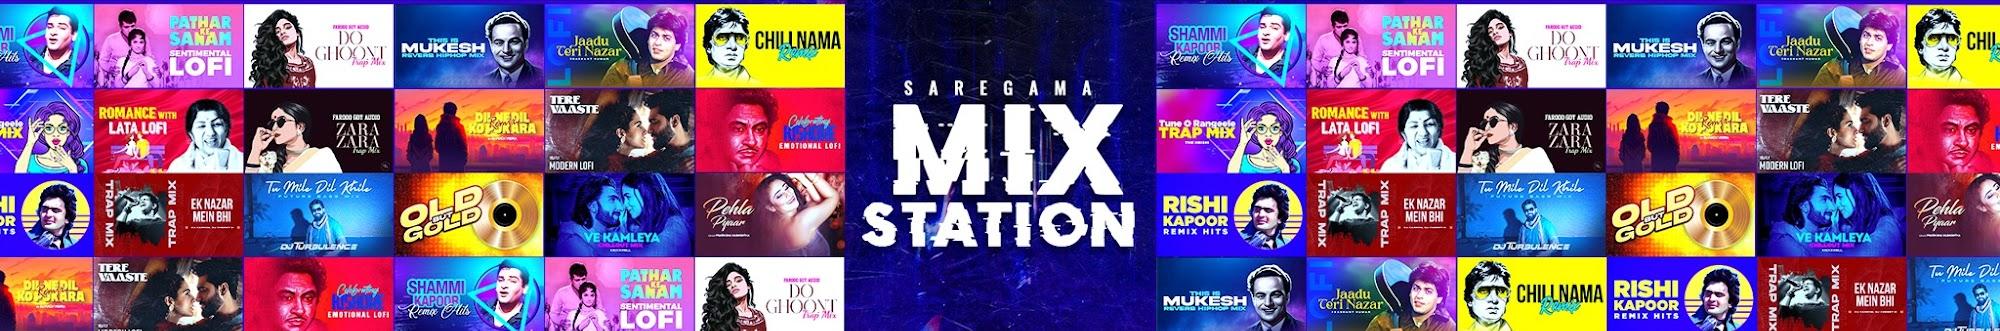 Saregama Mix Station